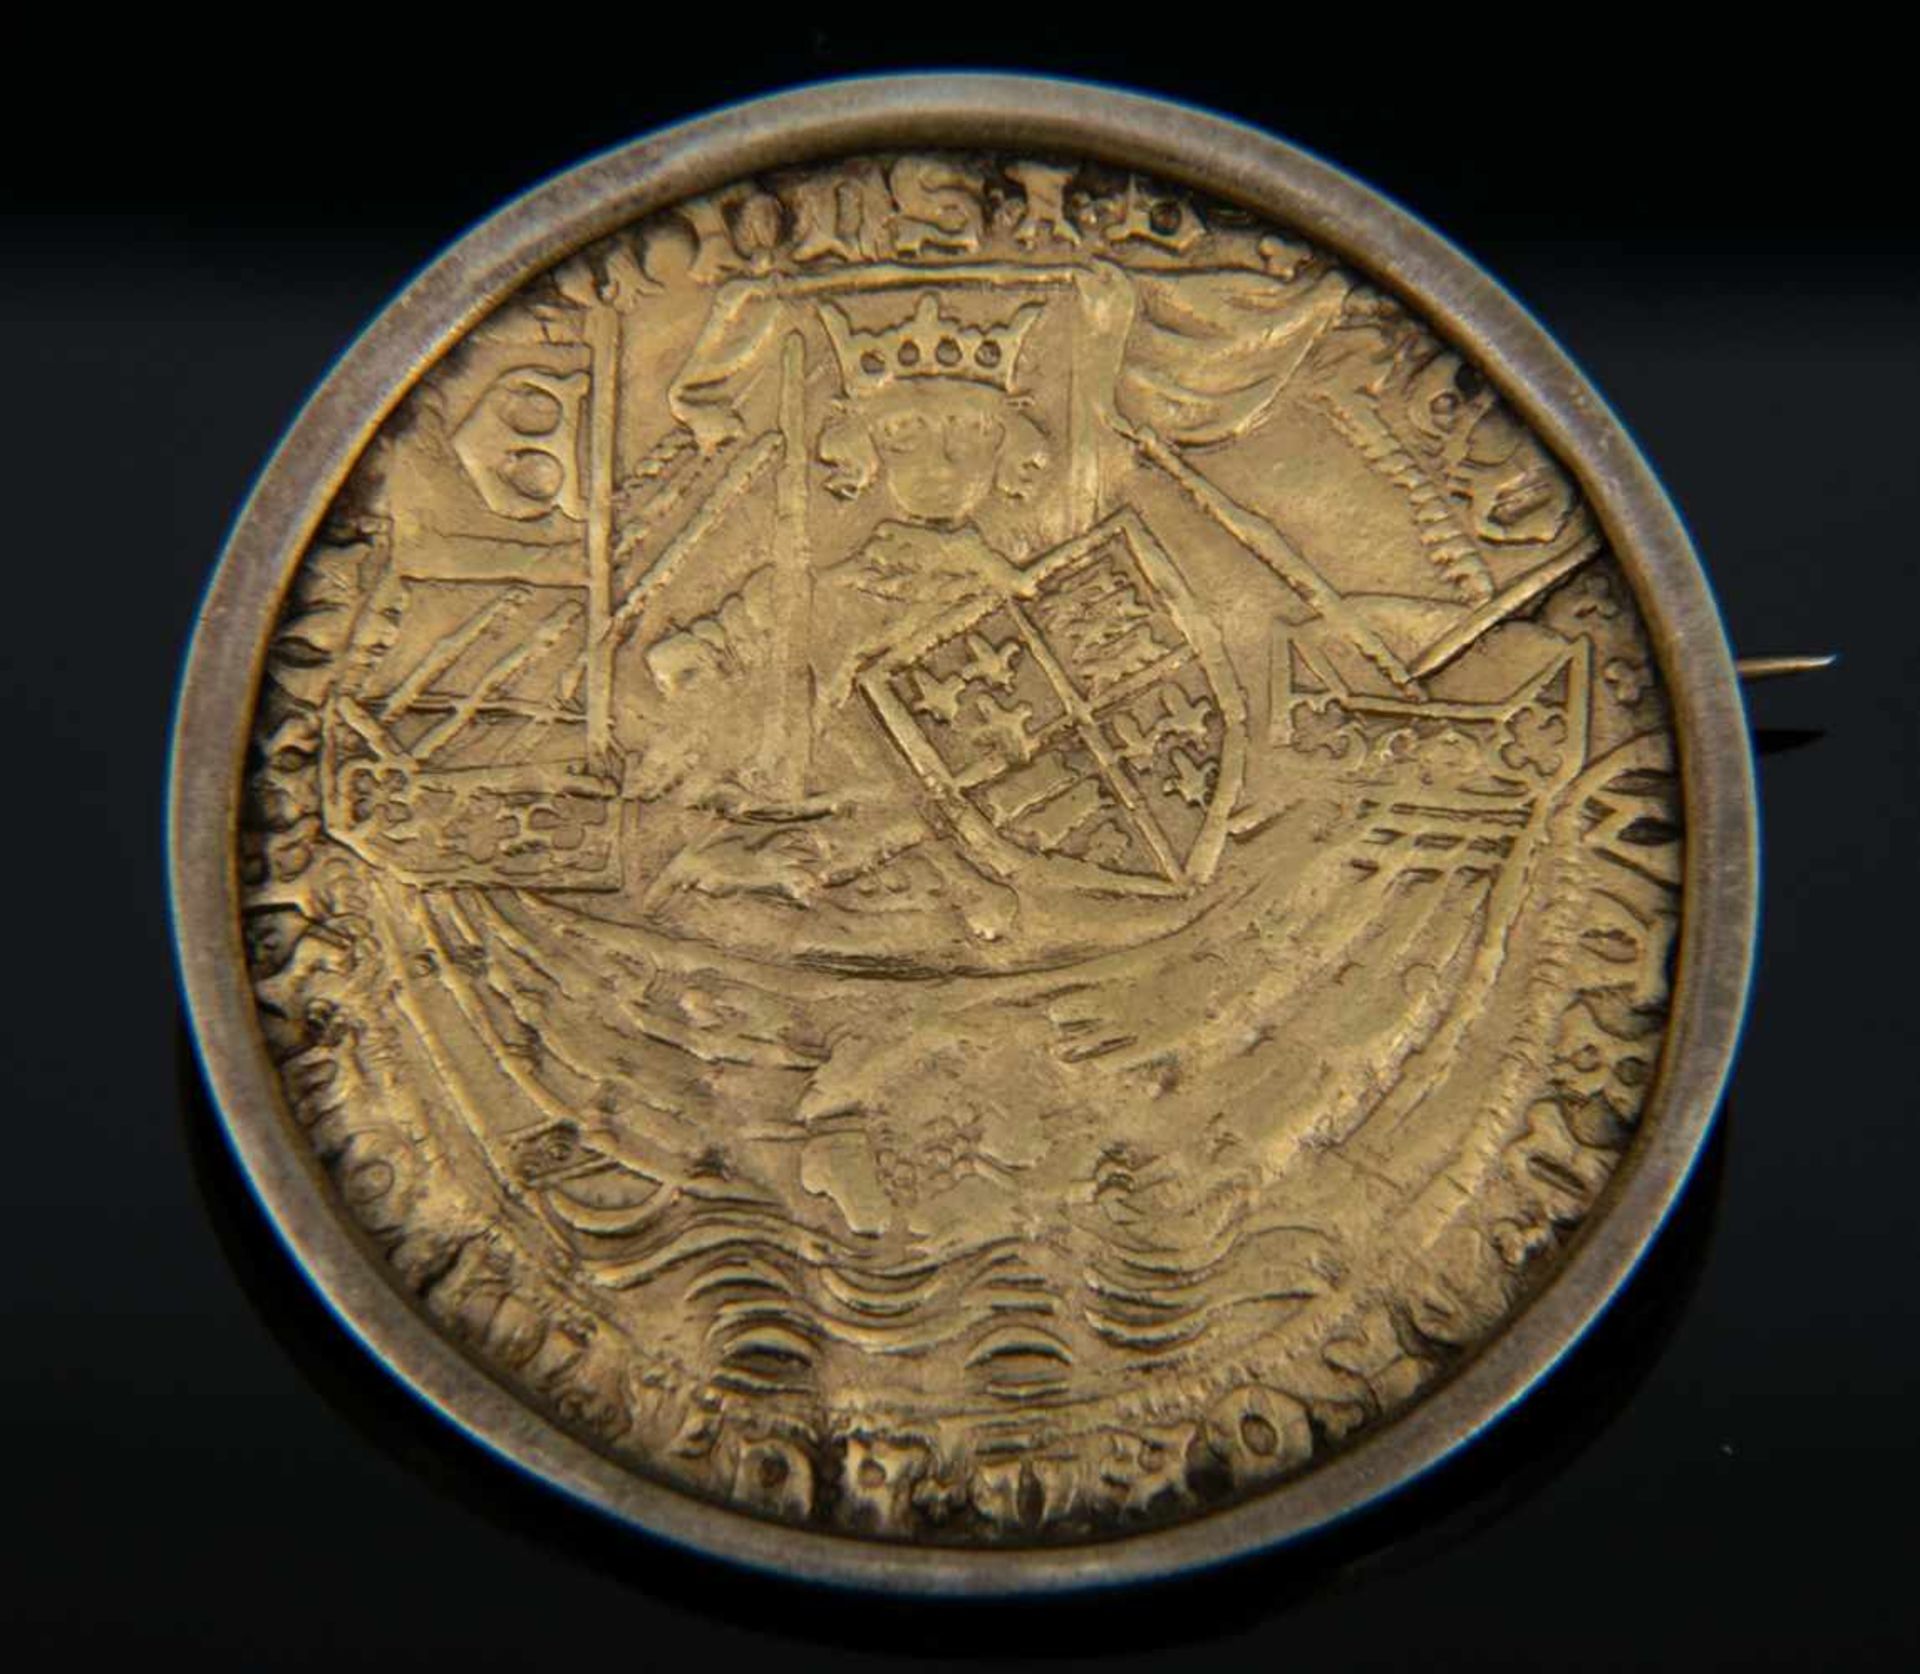 GOLD RYAL / ROSE NOBLE - Goldmünze. England 15. - 17. Jhd., vorderseitig König mit Schwert, Schild & - Bild 2 aus 15